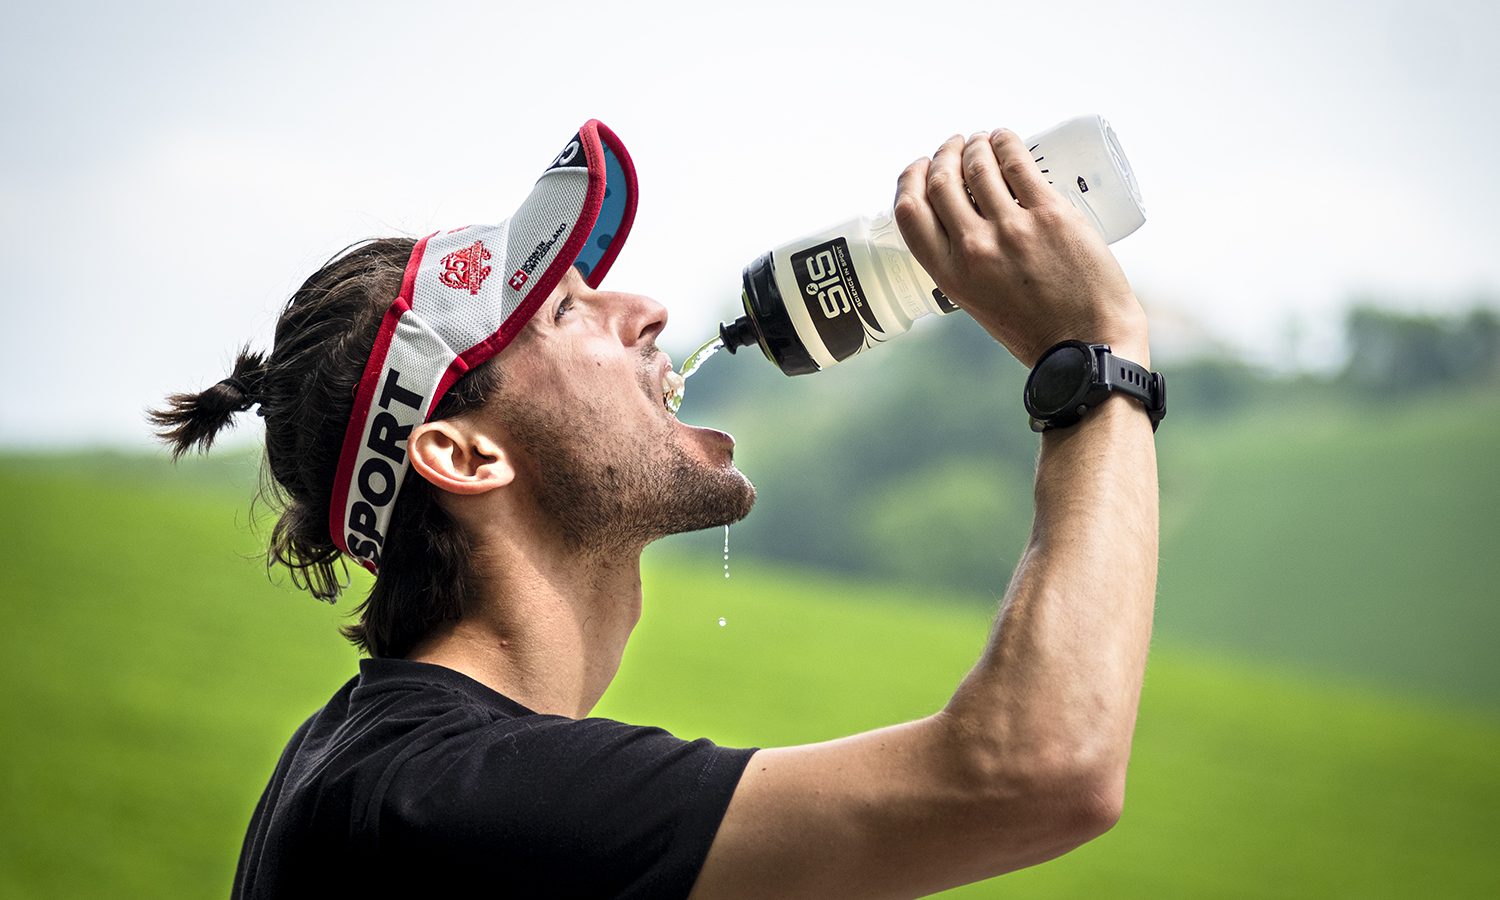 Allenarsi per la maratona – alimentazione e idratazione durante la gara